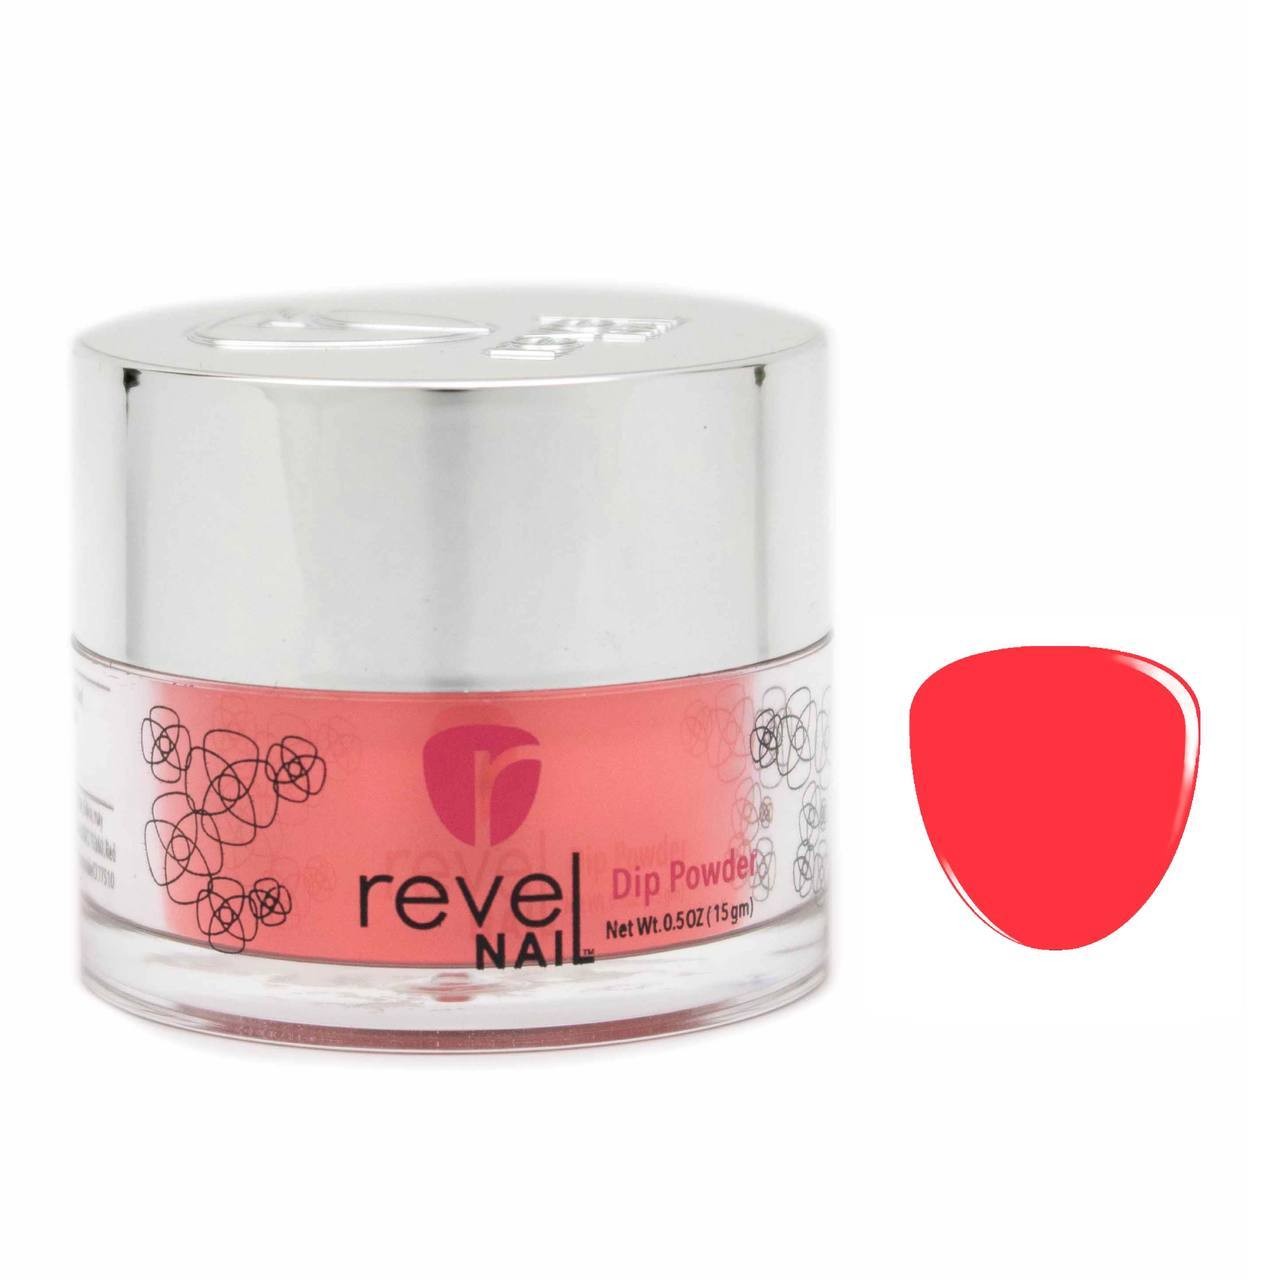 Revel Nail - Dip Powder - D253 Dawn - 29g